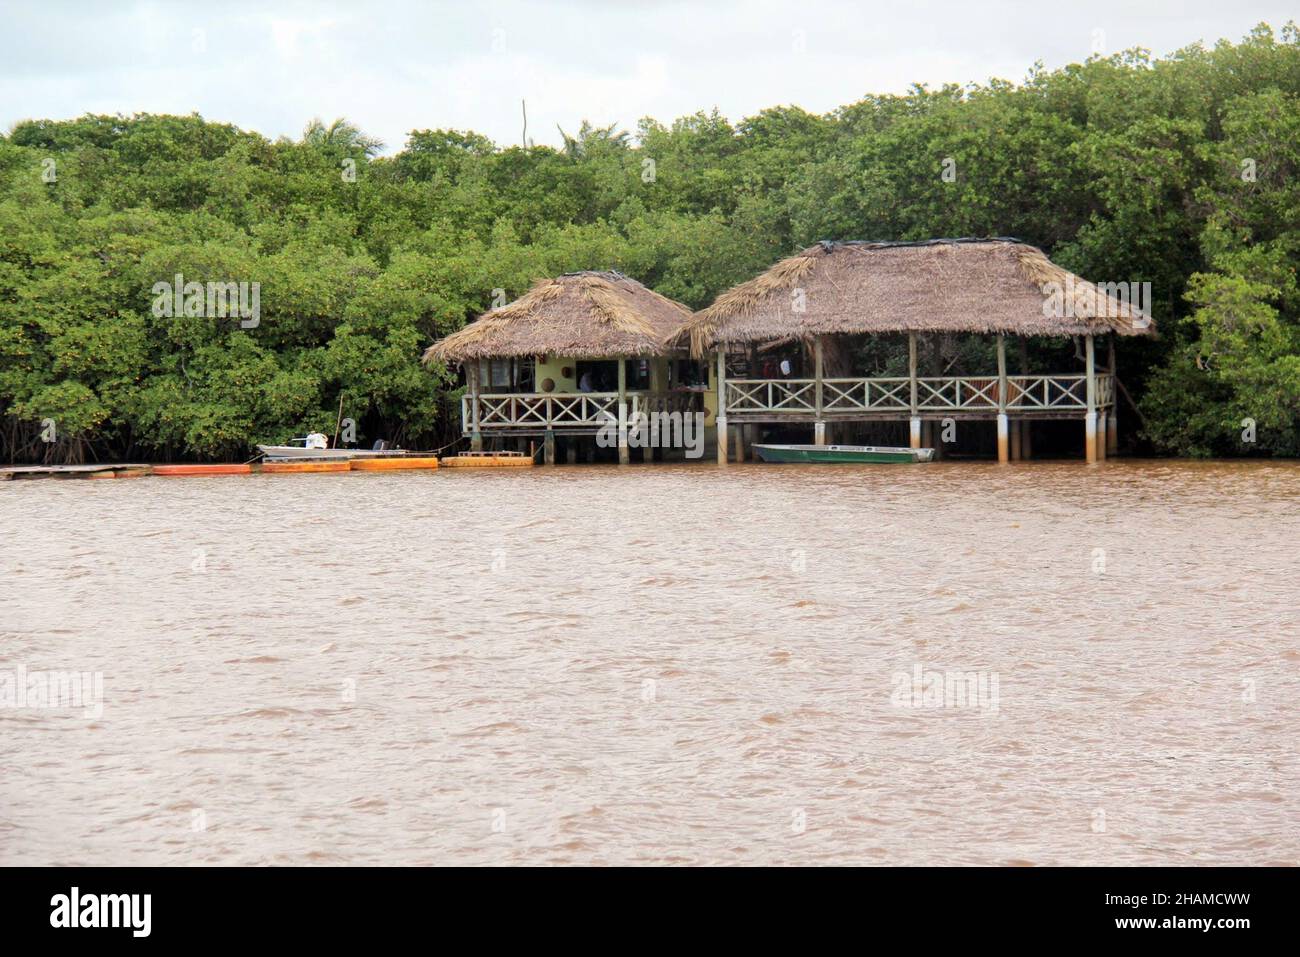 Restaurant am Flussufer gebaut, in der Mitte des Waldes. In Bahia - Brasilien. Stockfoto